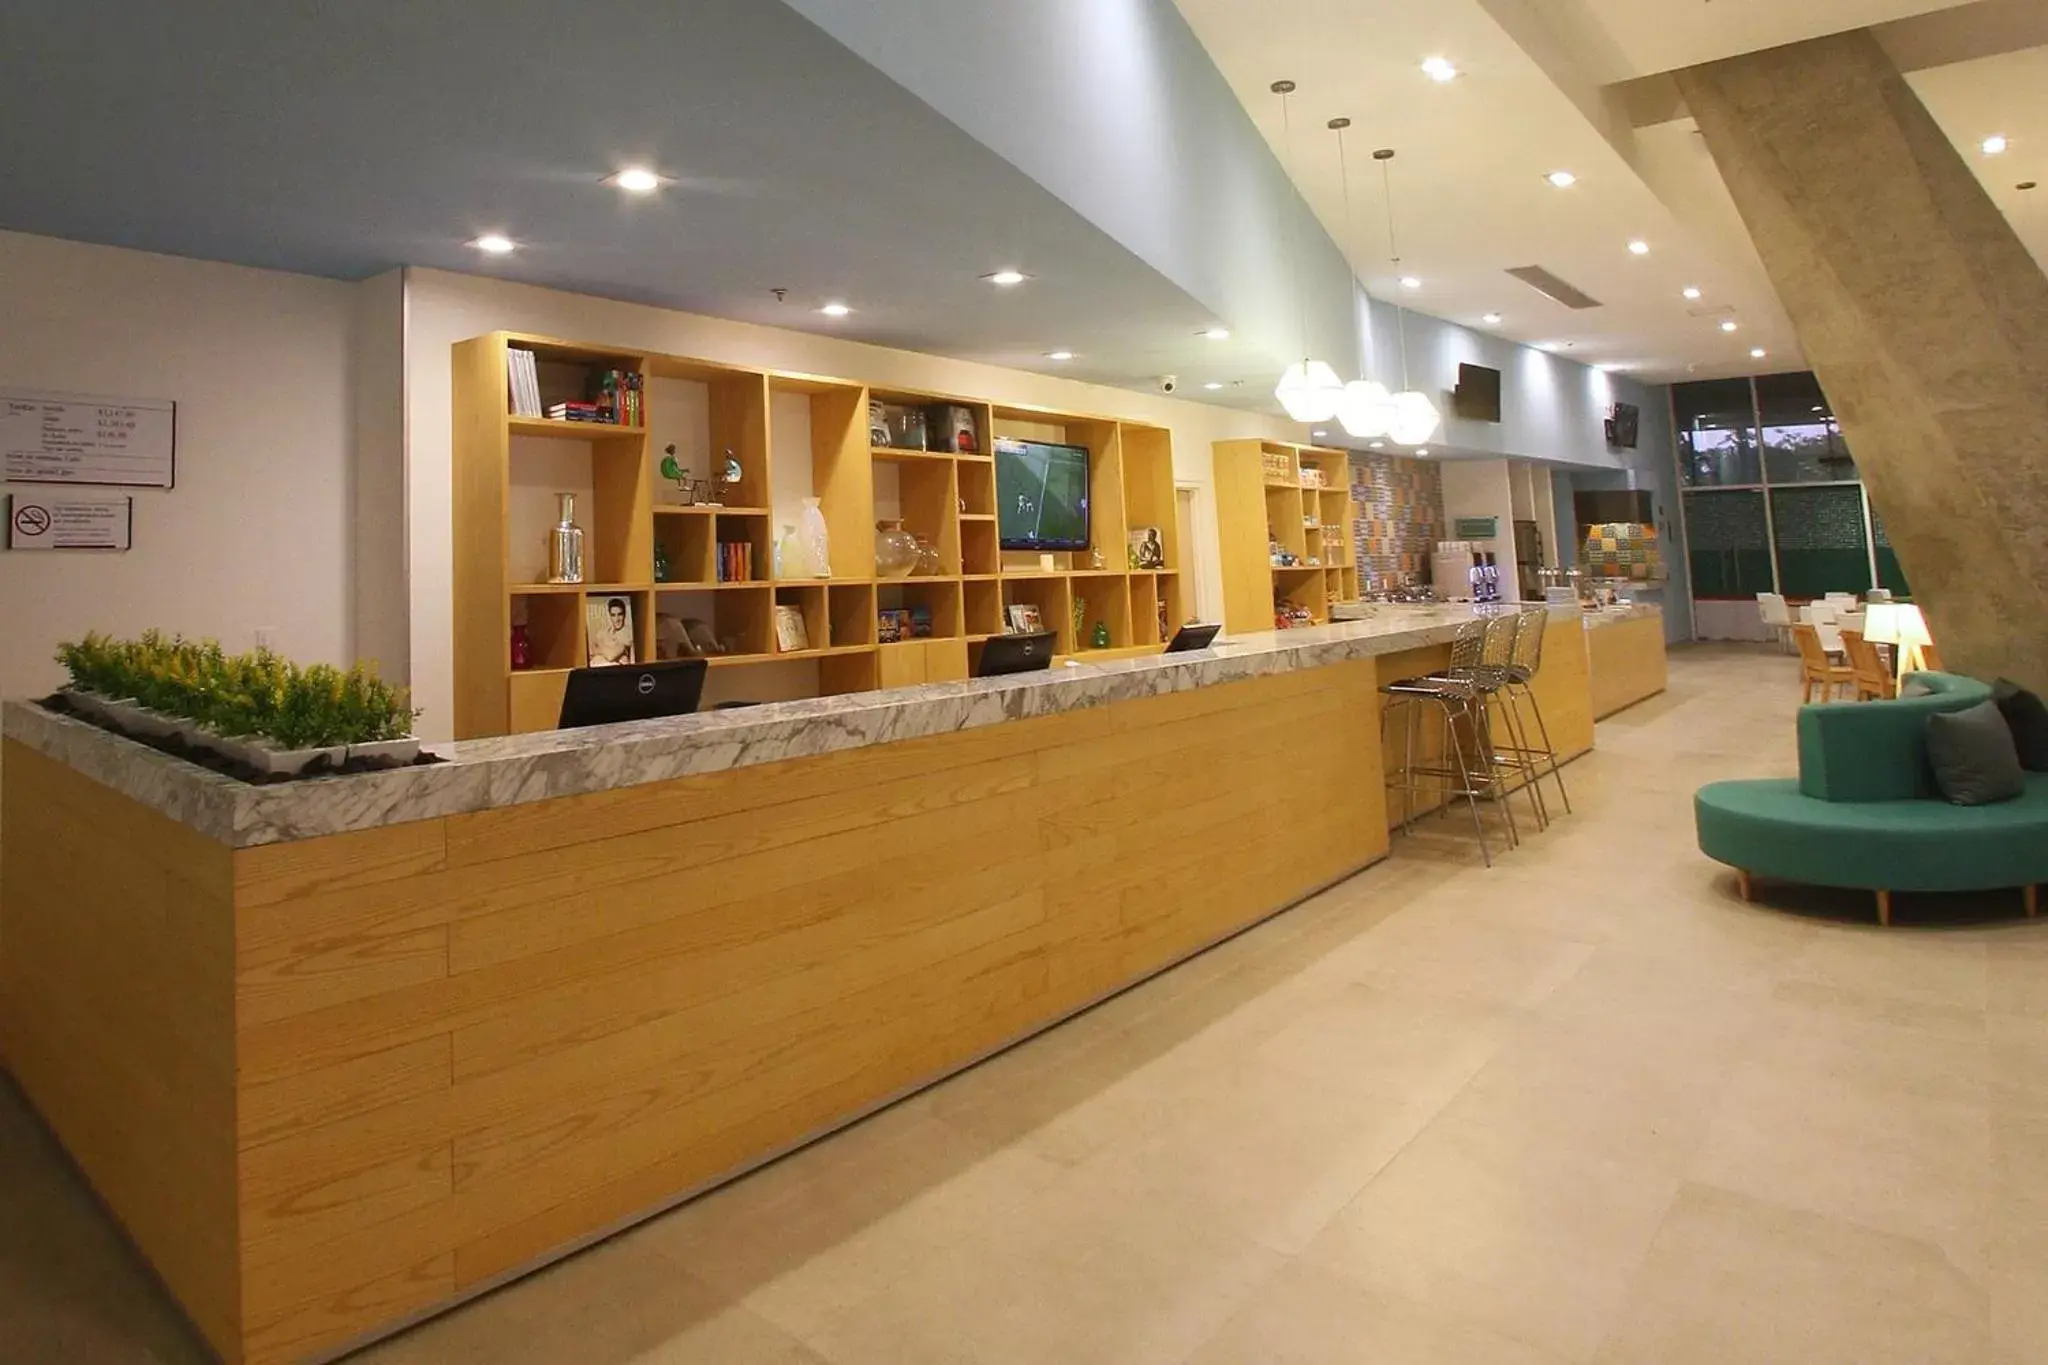 Lobby or reception, Lobby/Reception in Fiesta Inn & Loft Ciudad del Carmen